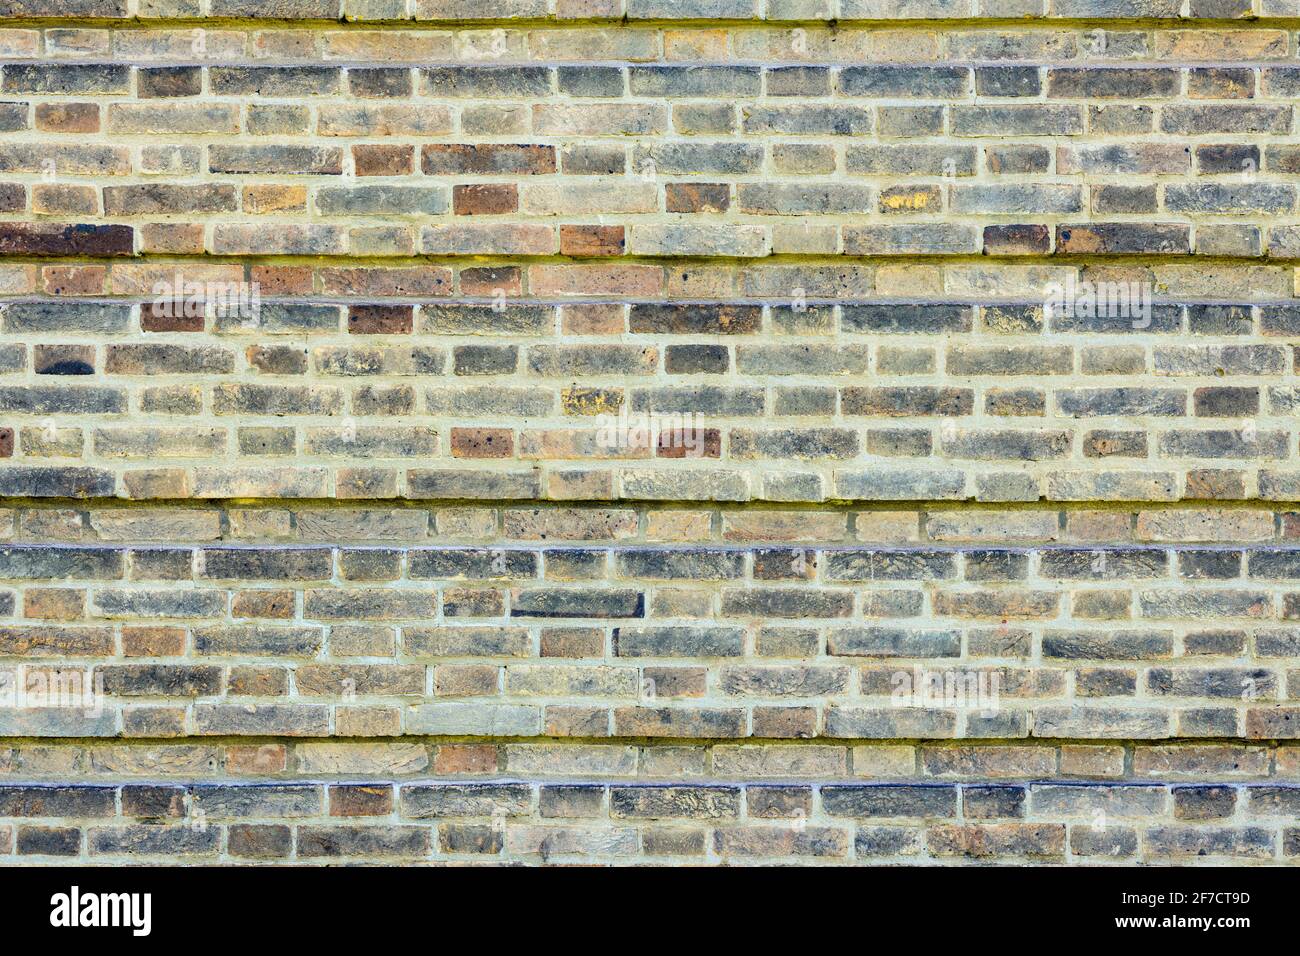 Gemusterte Ziegelwand Hintergrund Vielzahl von Ziegelsteinen Ziegelwand gemacht Mit normalen neuen Hausziegeln Foto in hoher Auflösung und hoher Qualität Stockfoto